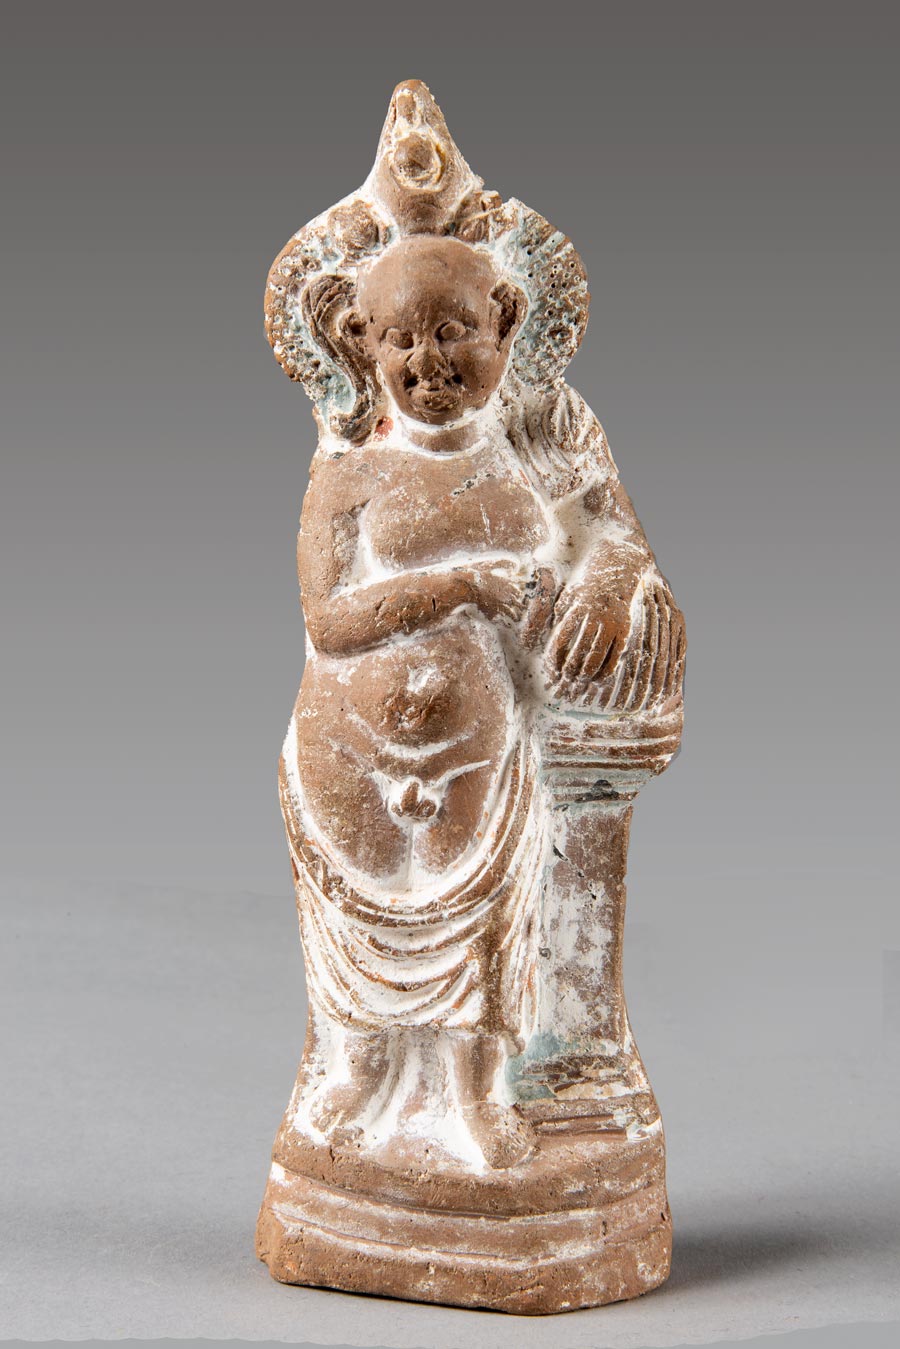 Figurine of the god Harpocrates